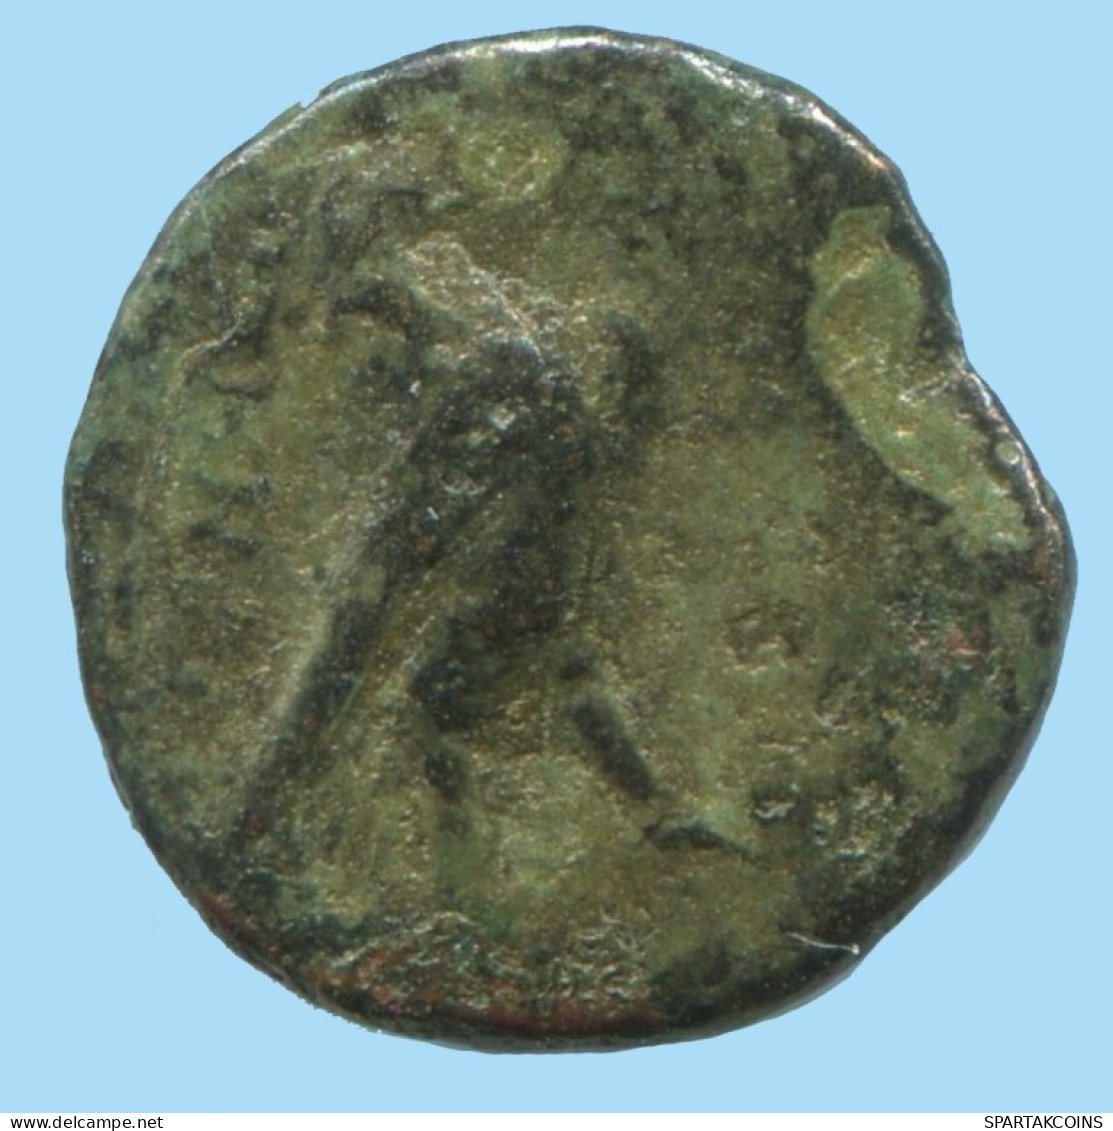 AIOLIS KYME EAGLE SKYPHOS Authentic Ancient GREEK Coin 1.4g/11mm #AG175.12.U.A - Grecques